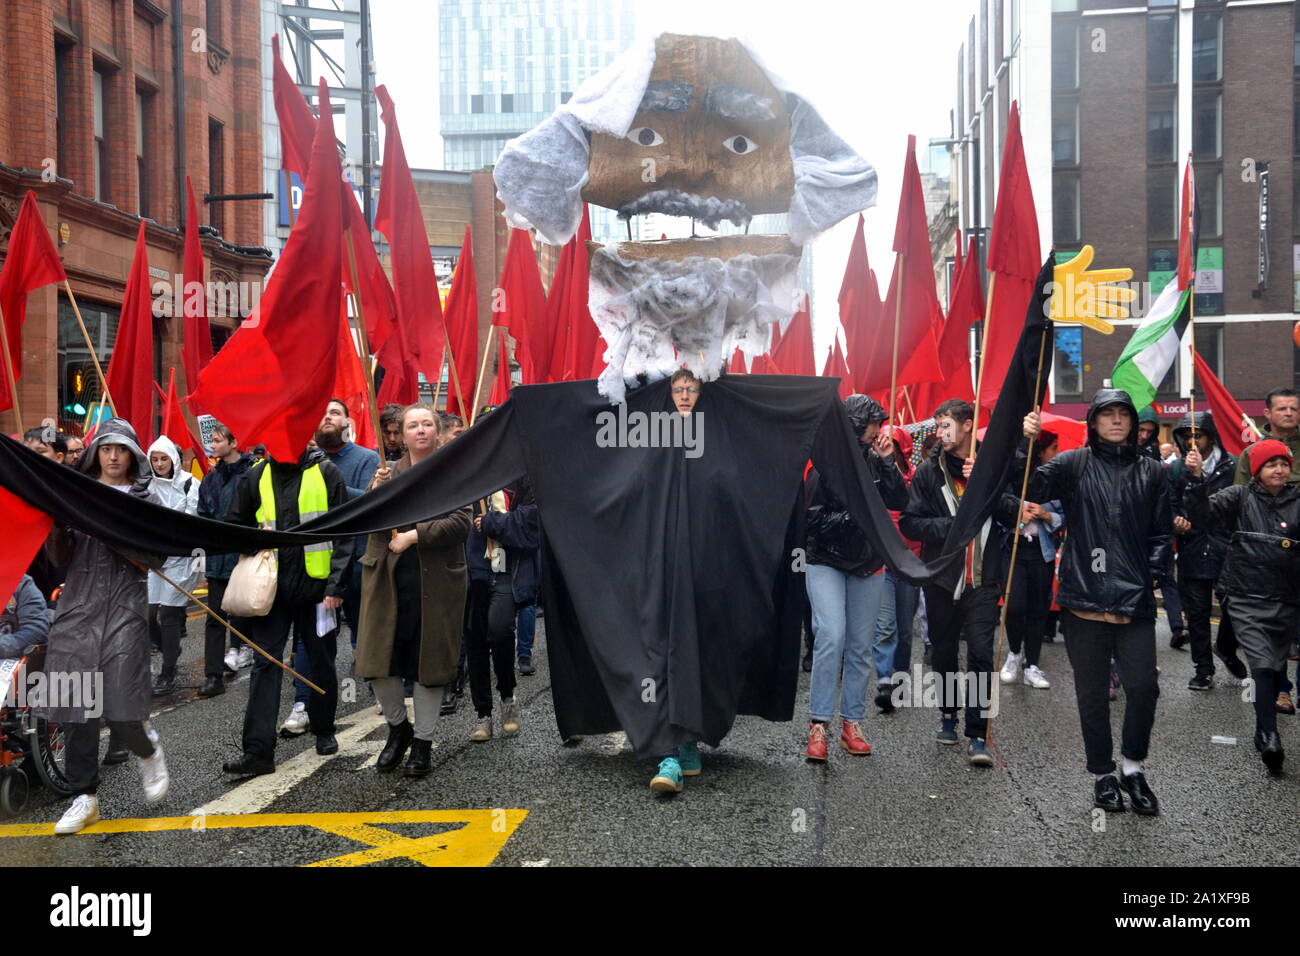 Die Volksversammlung gegen Sparpolitik organisiert eine große Protestmarsch durch die Innenstadt von Manchester, UK, zu Beginn der Konservativen Partei Konferenz 2019. Hier eine große Abbildung von Karl Marx führt eine Gruppe mit roten Fahnen. Stockfoto